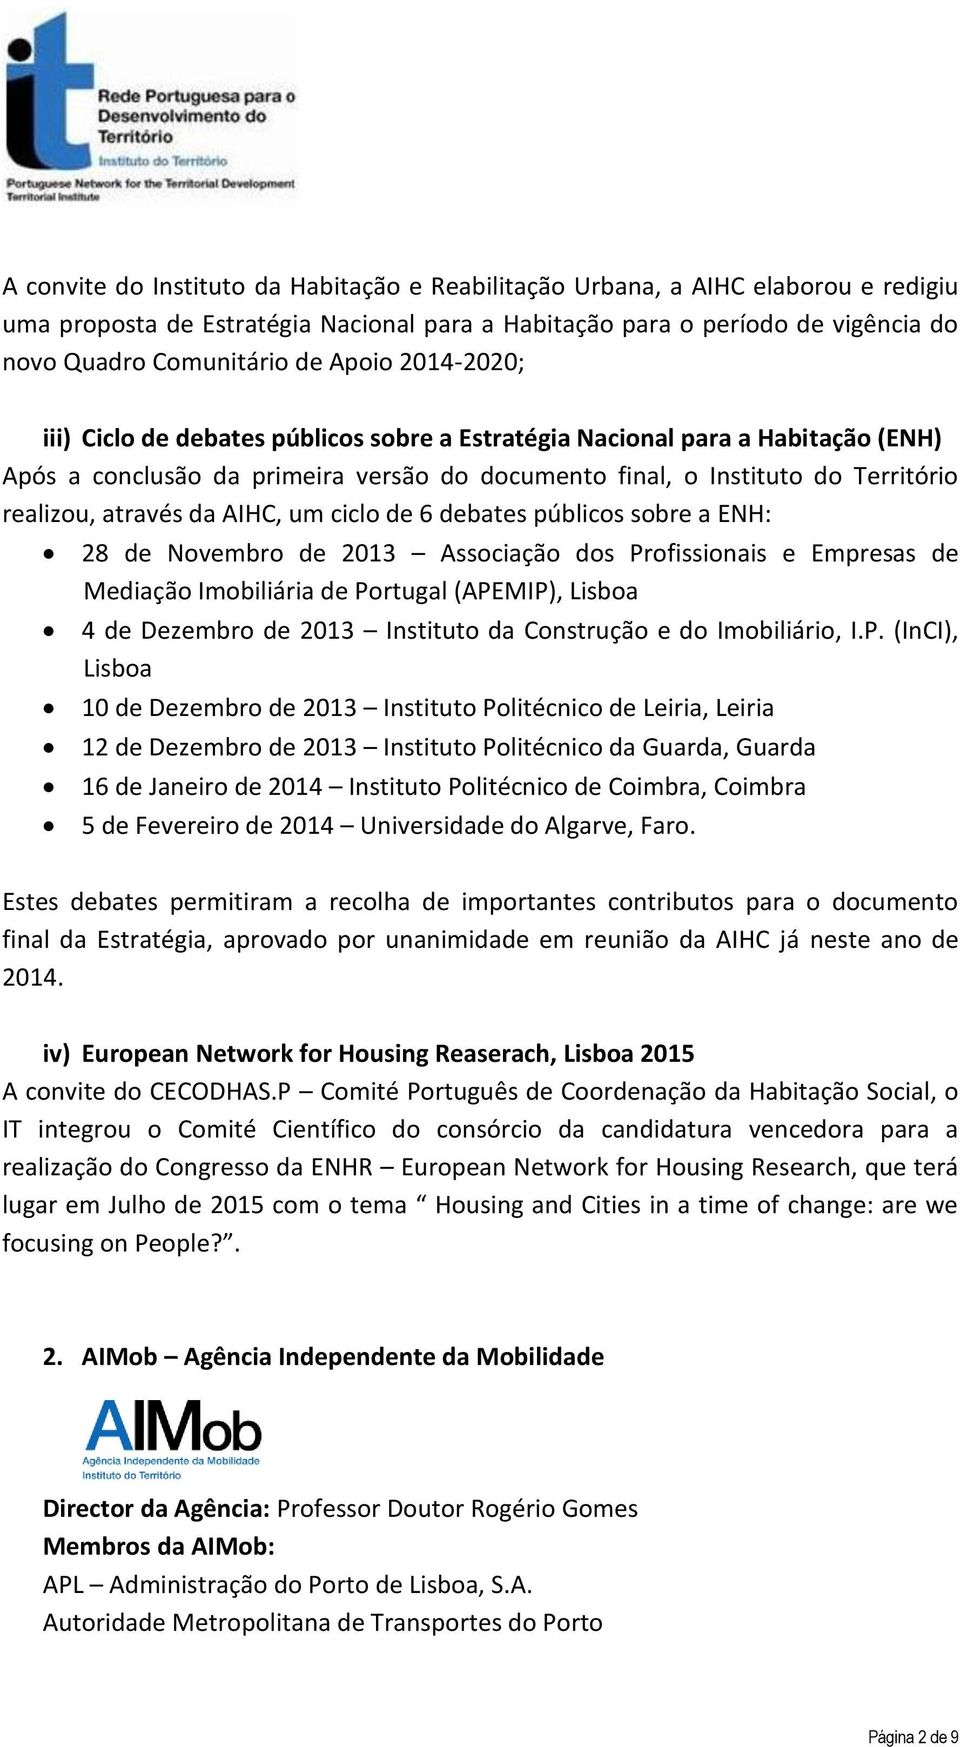 da AIHC, um ciclo de 6 debates públicos sobre a ENH: 28 de Novembro de 2013 Associação dos Profissionais e Empresas de Mediação Imobiliária de Portugal (APEMIP), Lisboa 4 de Dezembro de 2013